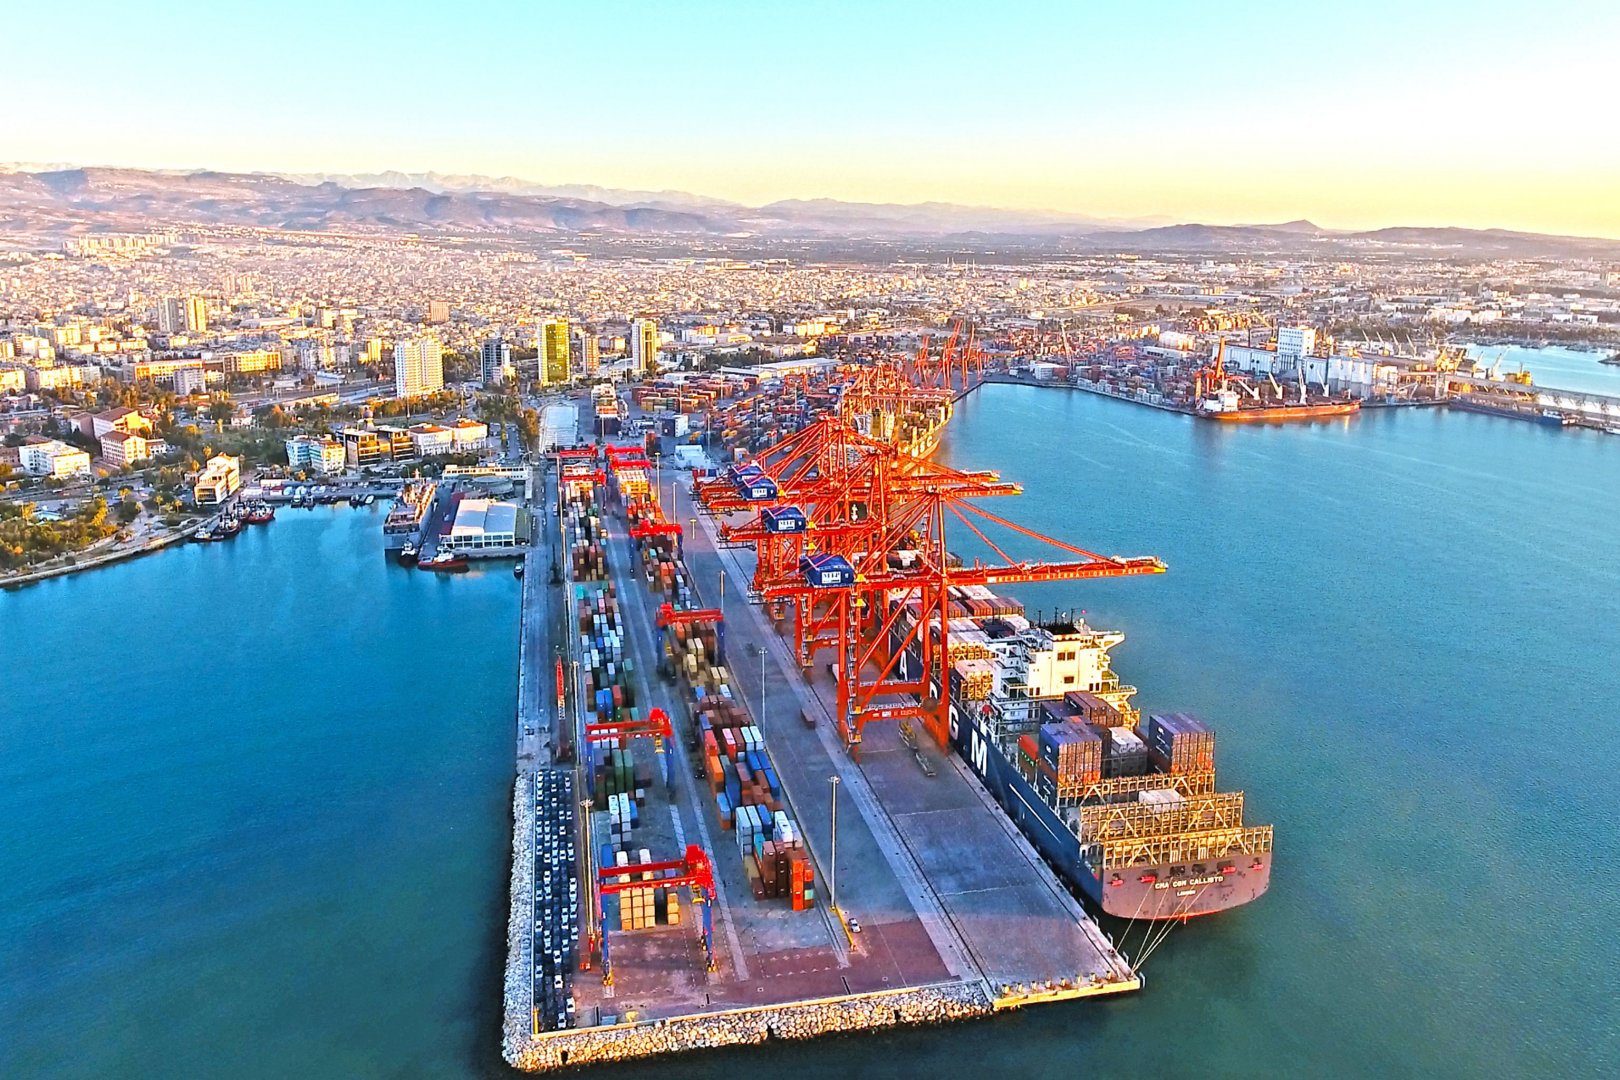 Yanvar-avqust aylarında Mersin limanının qəbul etdiyi gəmilərin sayı açıqlanıb (ÖZƏL)